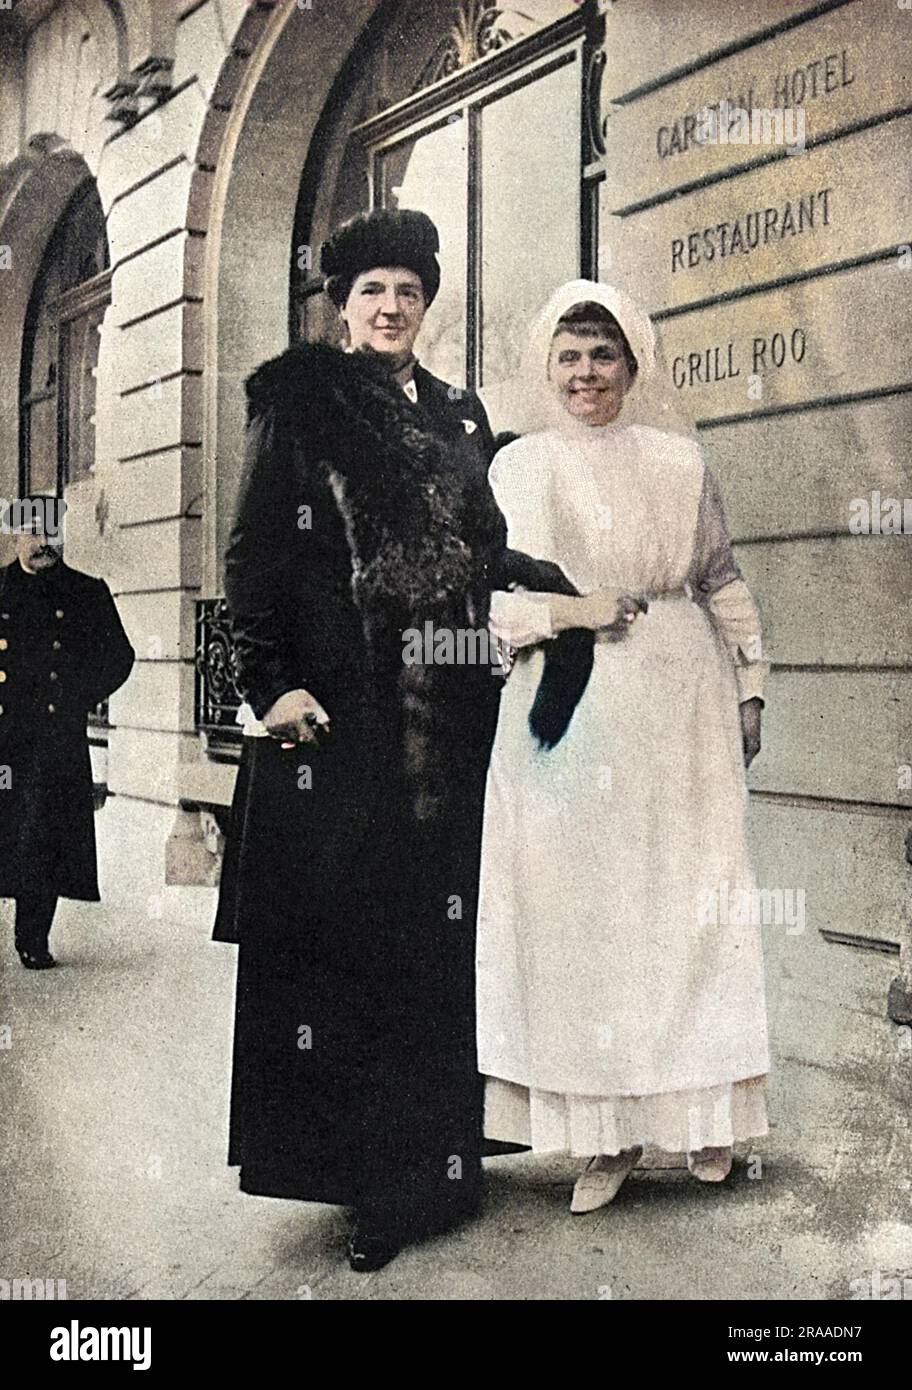 Ein Foto von Königin Amelie von Portugal (links) (1865-1951), in Paris neben Madame Iswolsky, der Frau des russischen Botschafters, gekleidet in einer Krankenschwester-Uniform. Vor dem Carlton Hotel, das WW1 als russisches Krankenhaus genutzt wurde. Datum: 1916 Stockfoto